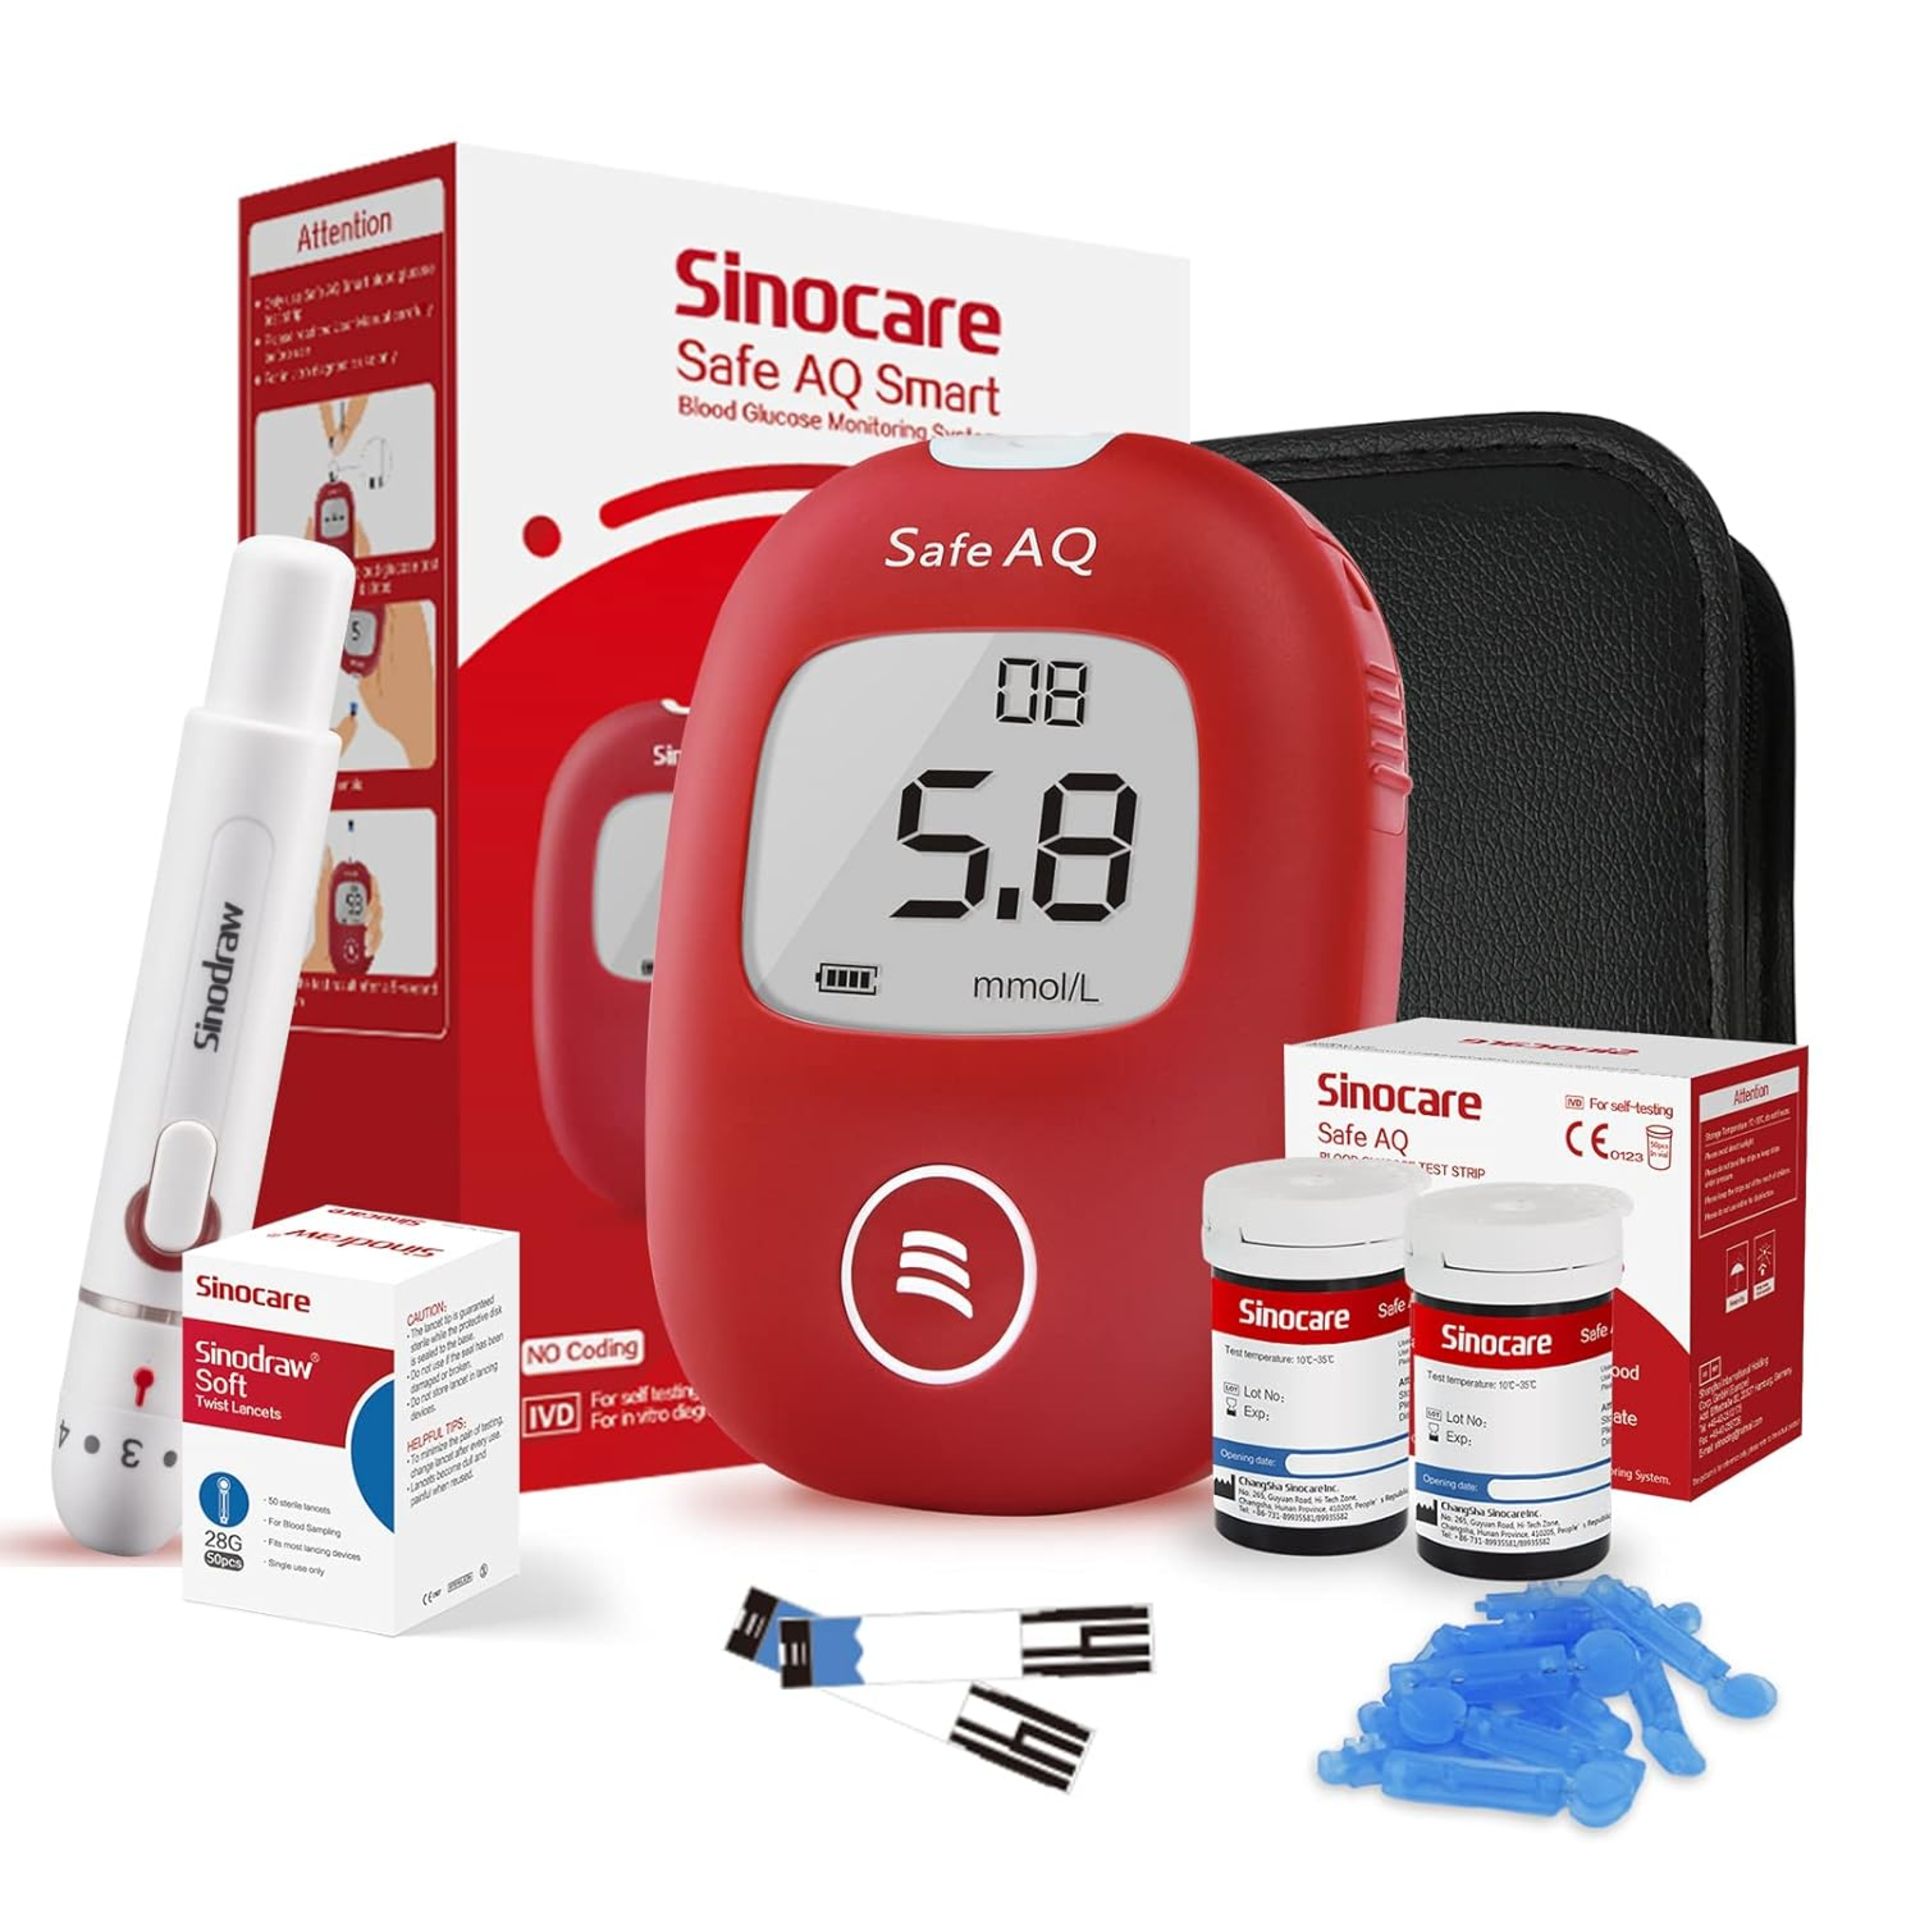 RRP £21.99 sinocare Diabetes Testing Kit/ Blood Glucose Monitor Safe AQ Smart/ Blood Sugar Test Kit